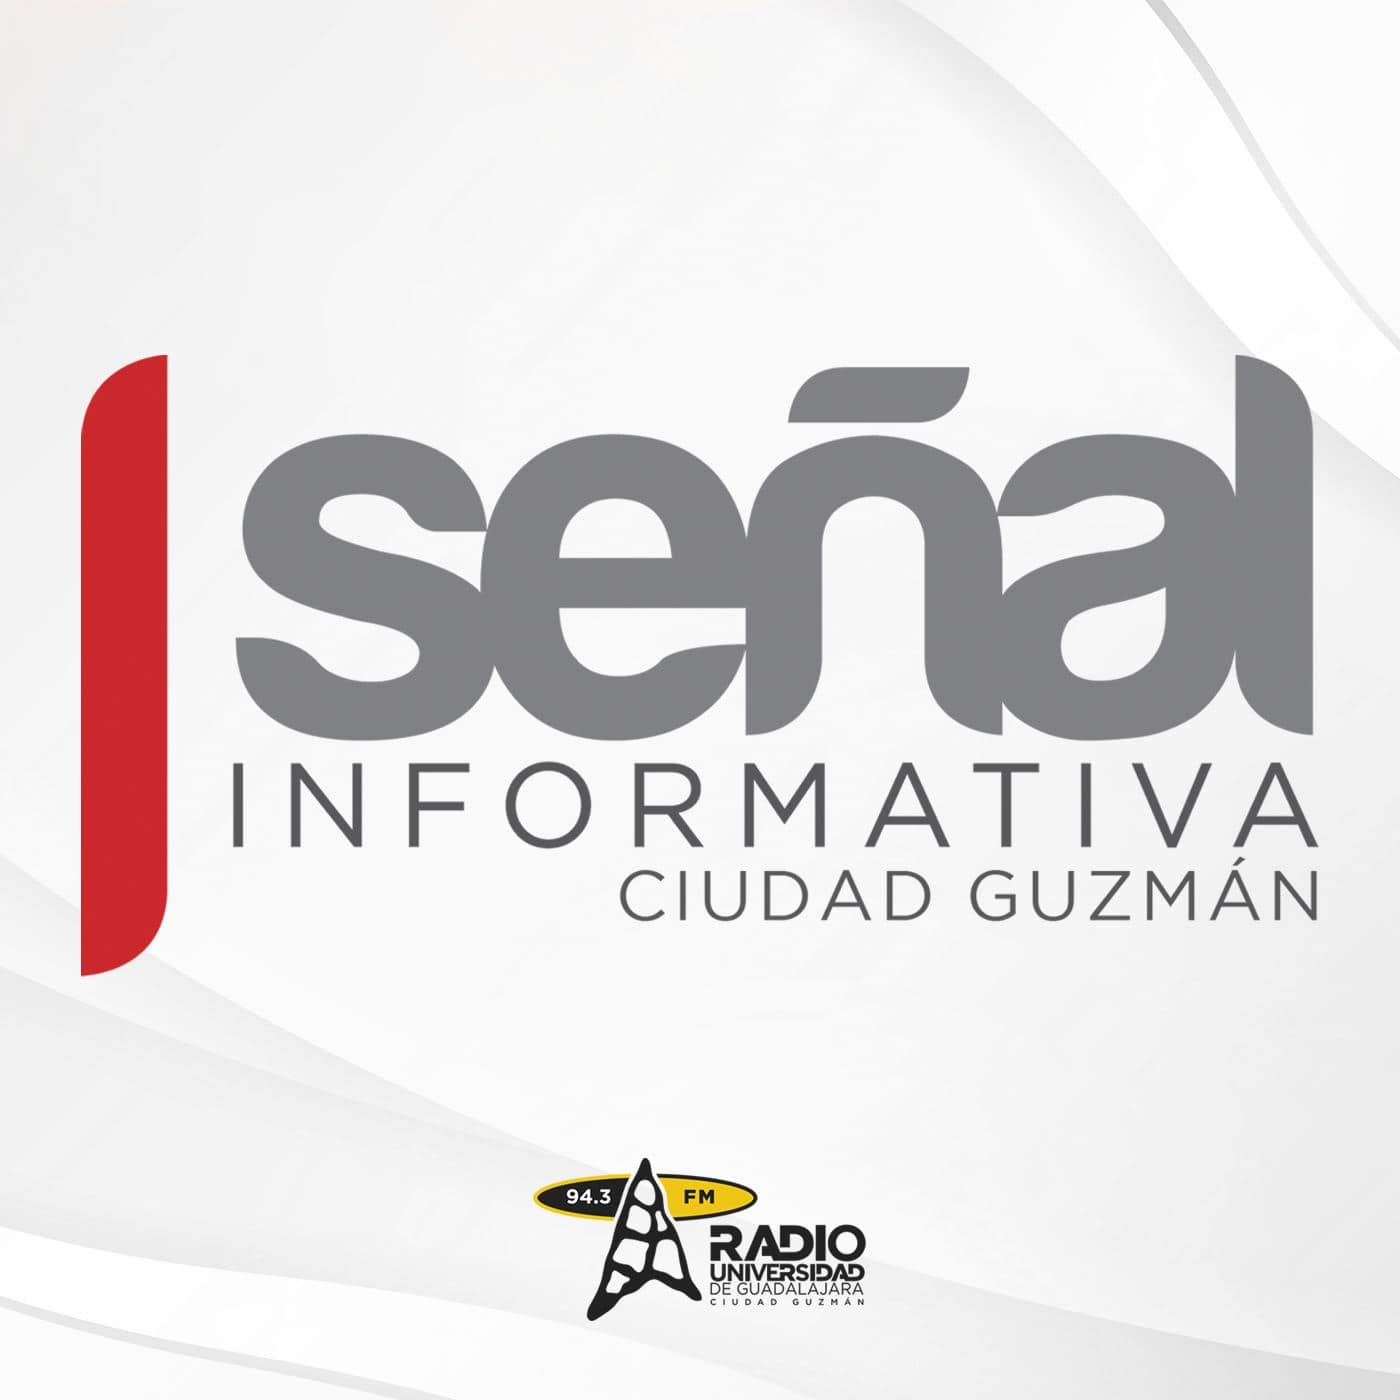 Señal Informativa Ciudad Guzmán - 31de octubre